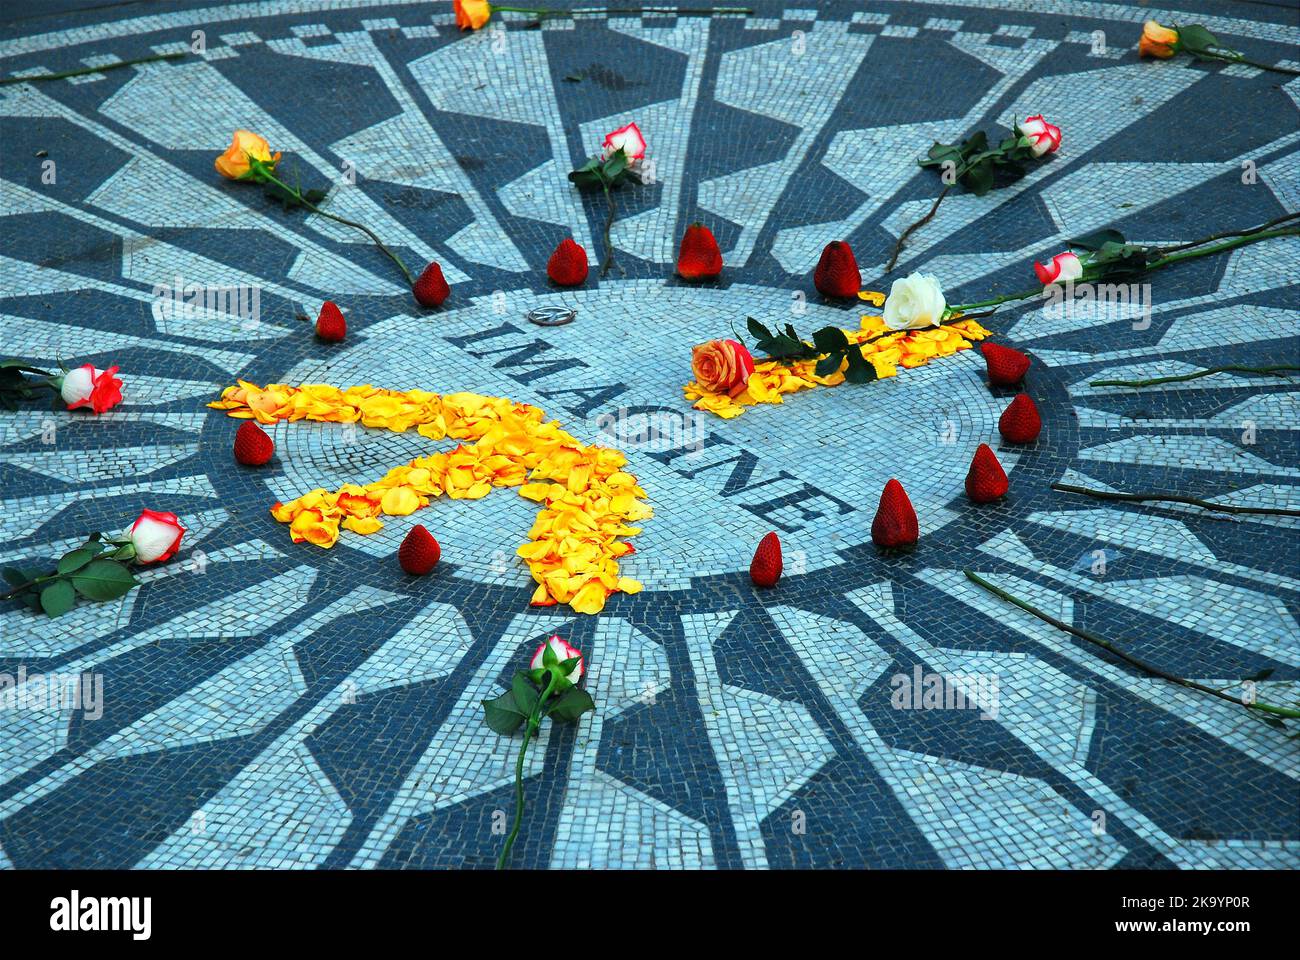 Les pétales de fleurs sont disposés dans un symbole de paix sur une mosaïque intitulée imagine, un mémorial à Beatle John Lennon dans Strawberry Fields, Central Park Banque D'Images